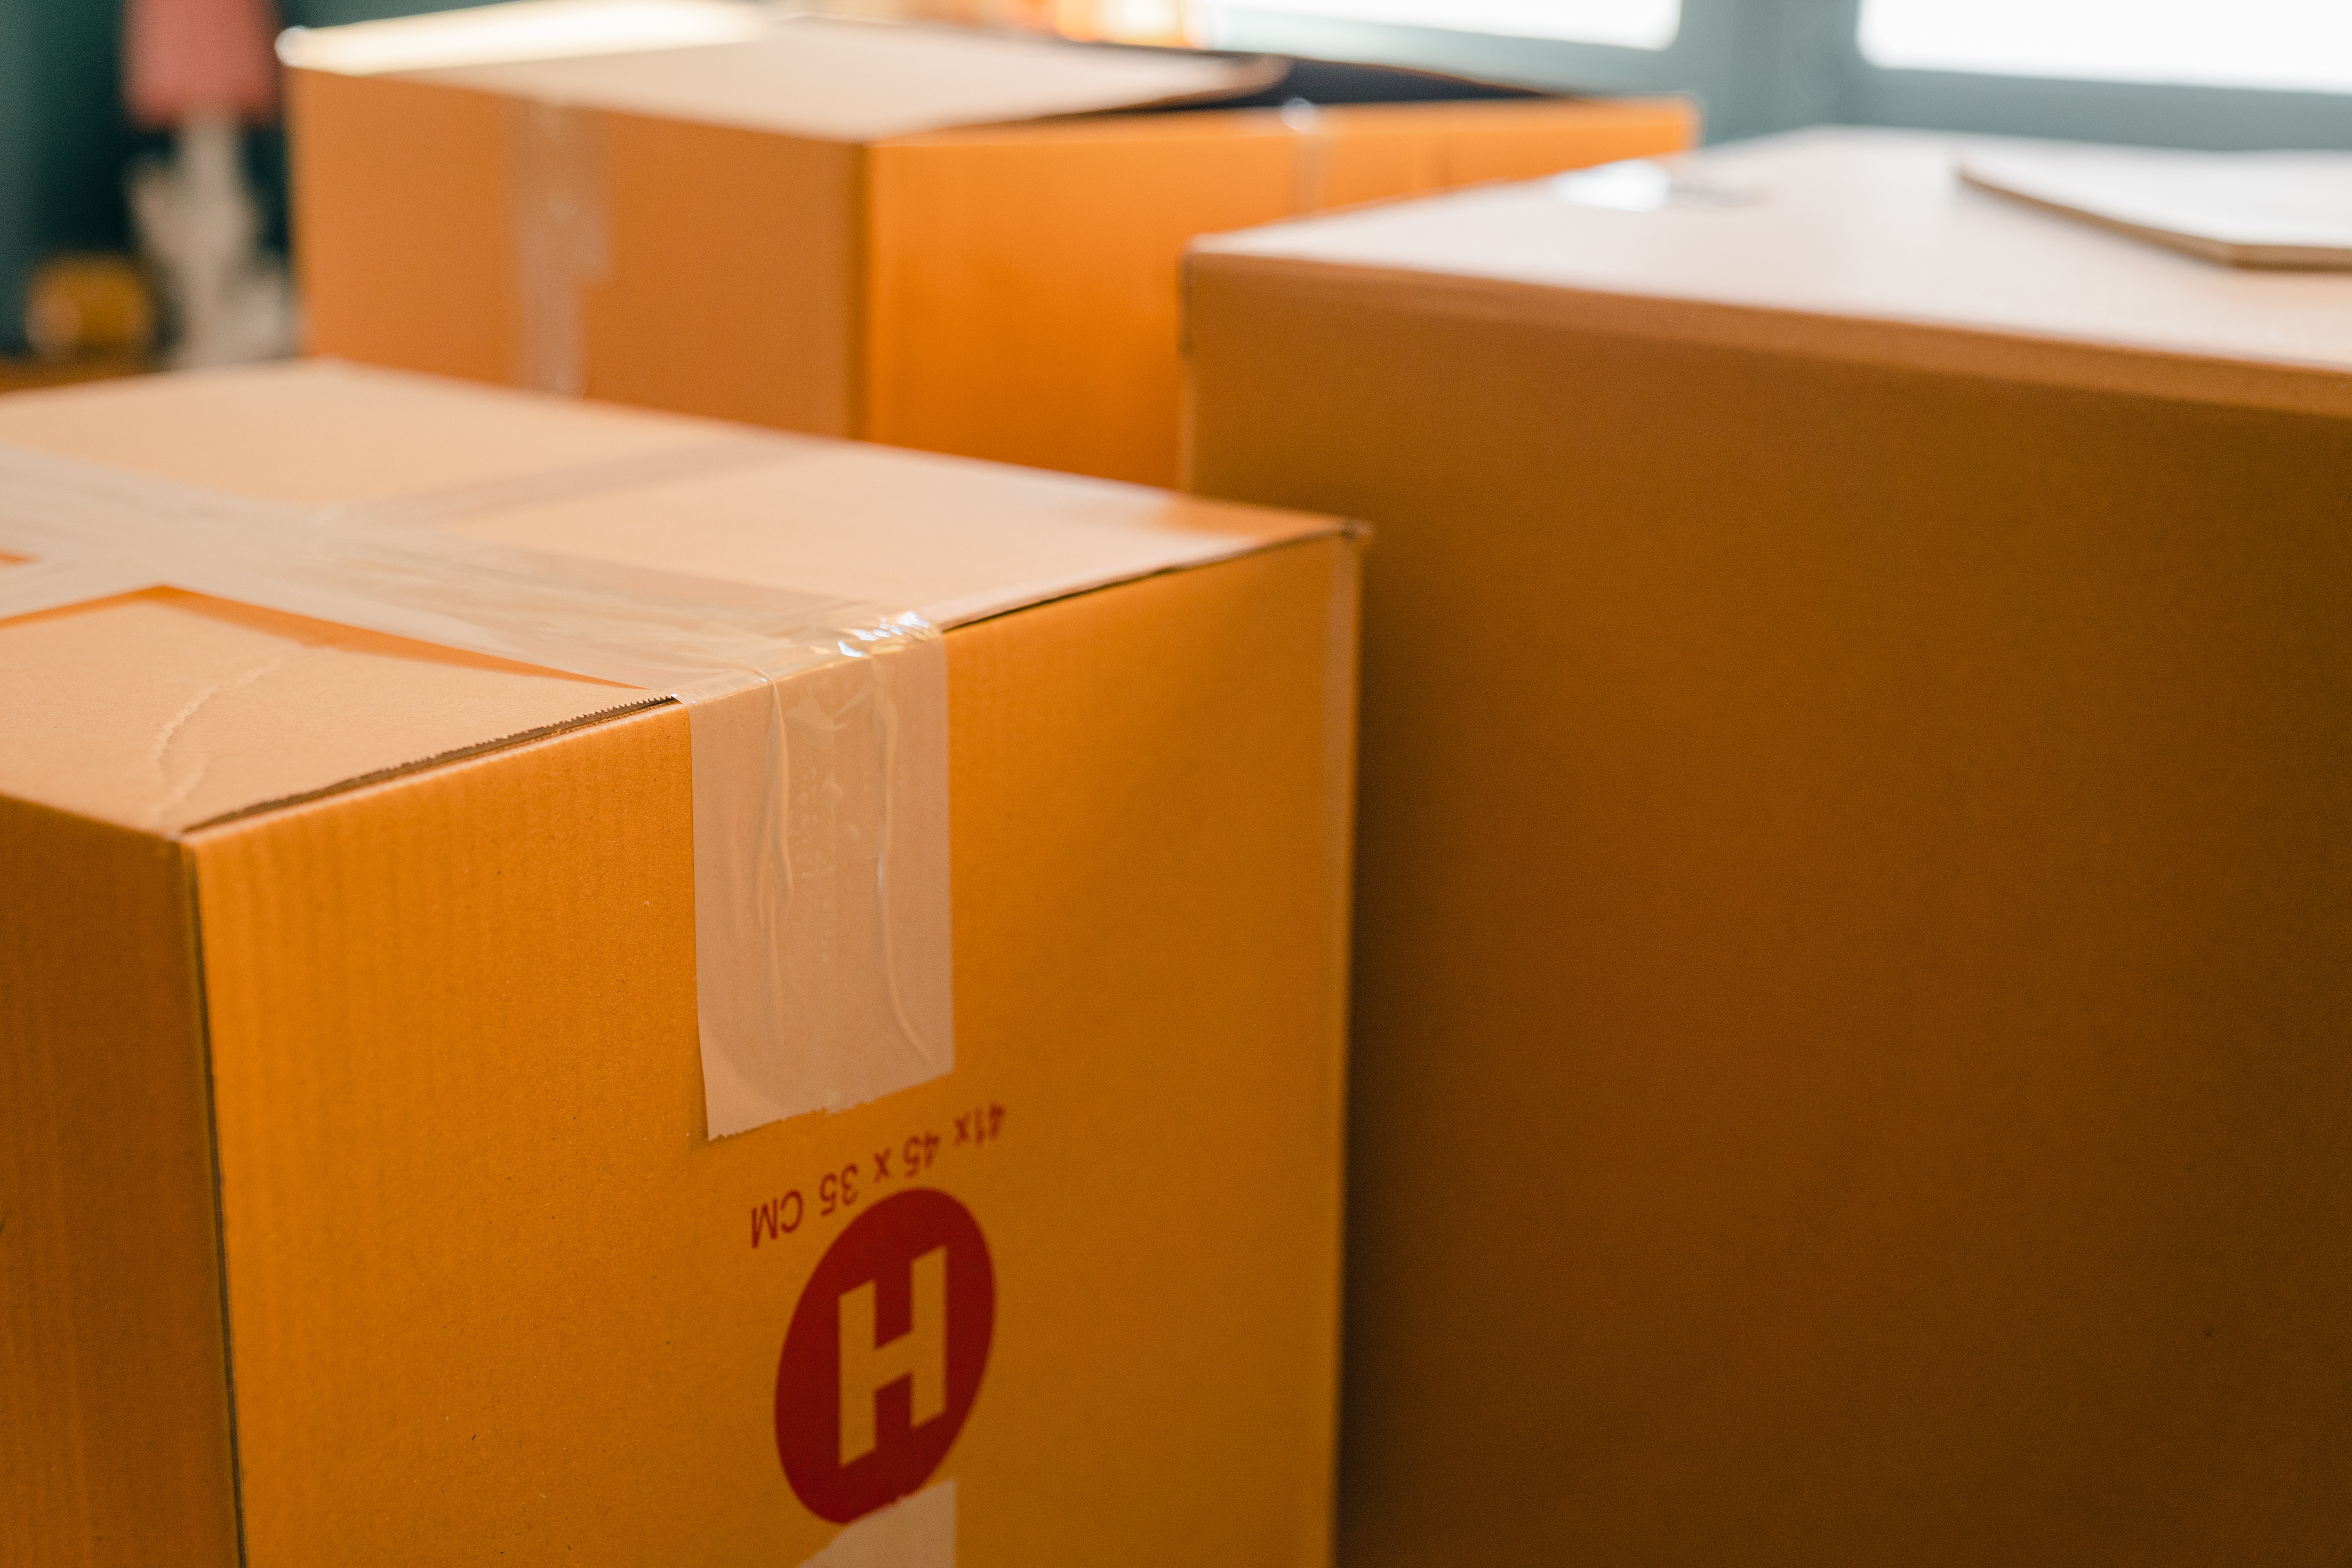 about parcel drop boxes